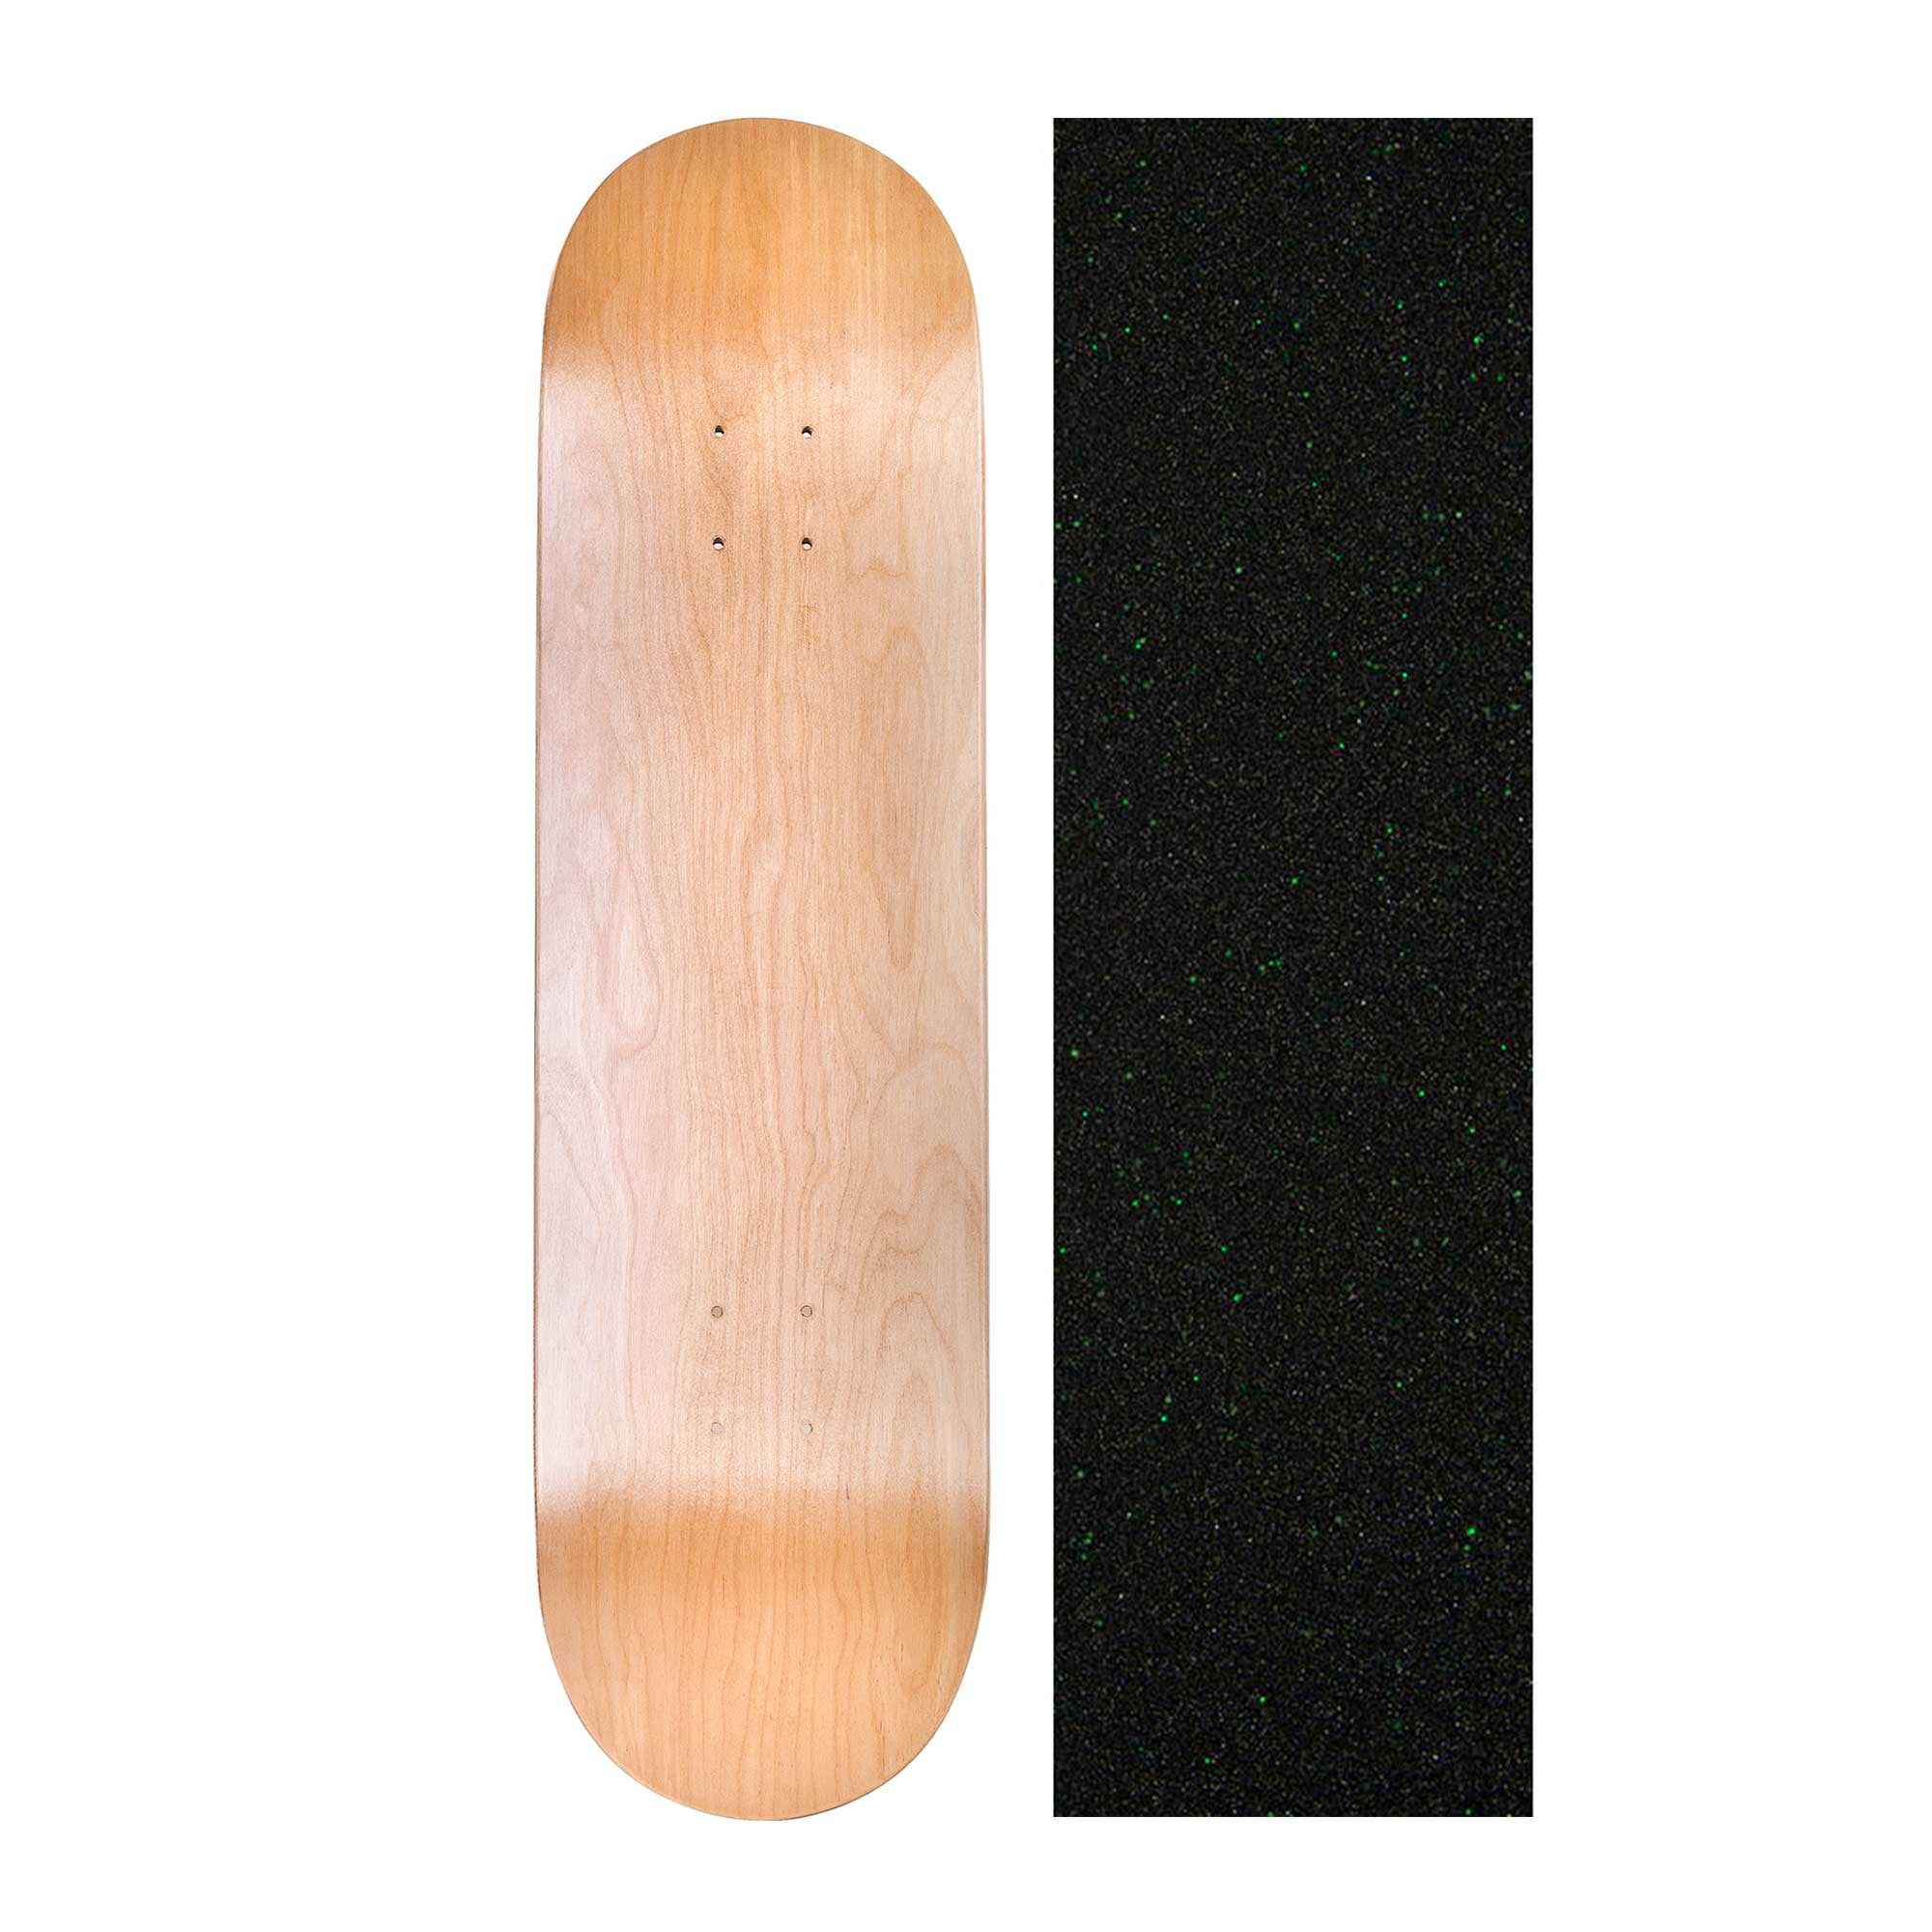 Grip Tape Easy People Skateboards SB-1 Semi-Pro 5 Blank Skateboard Decks 7.75 